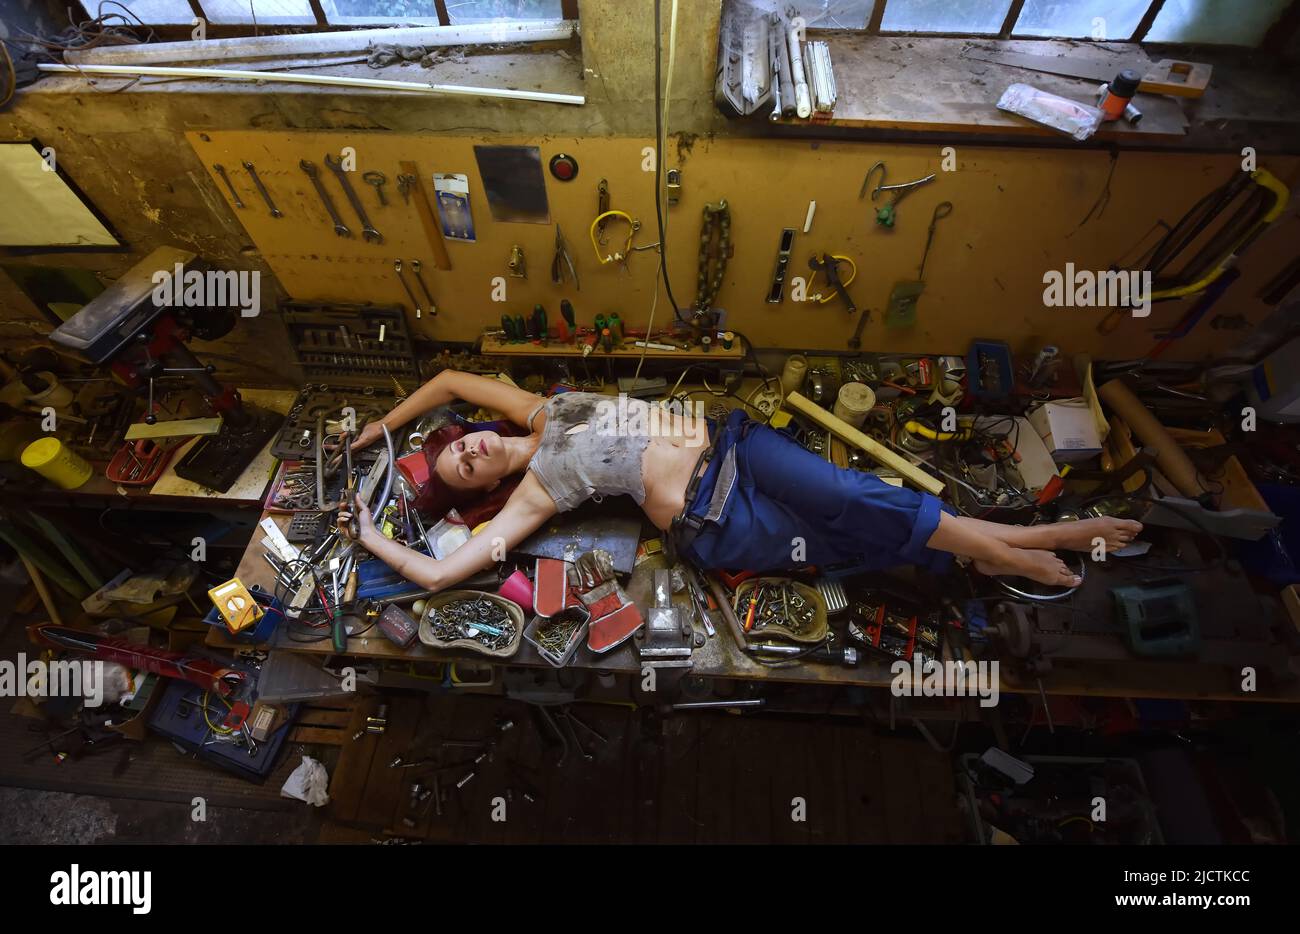 Eine junge, schöne Frau findet während ihrer Arbeitszeit Zeit zum Schlafen. Sie legt sich auf den Arbeitstisch, der mit Werkzeugen und anderen elektronischen Geräten gefüllt ist. Stockfoto